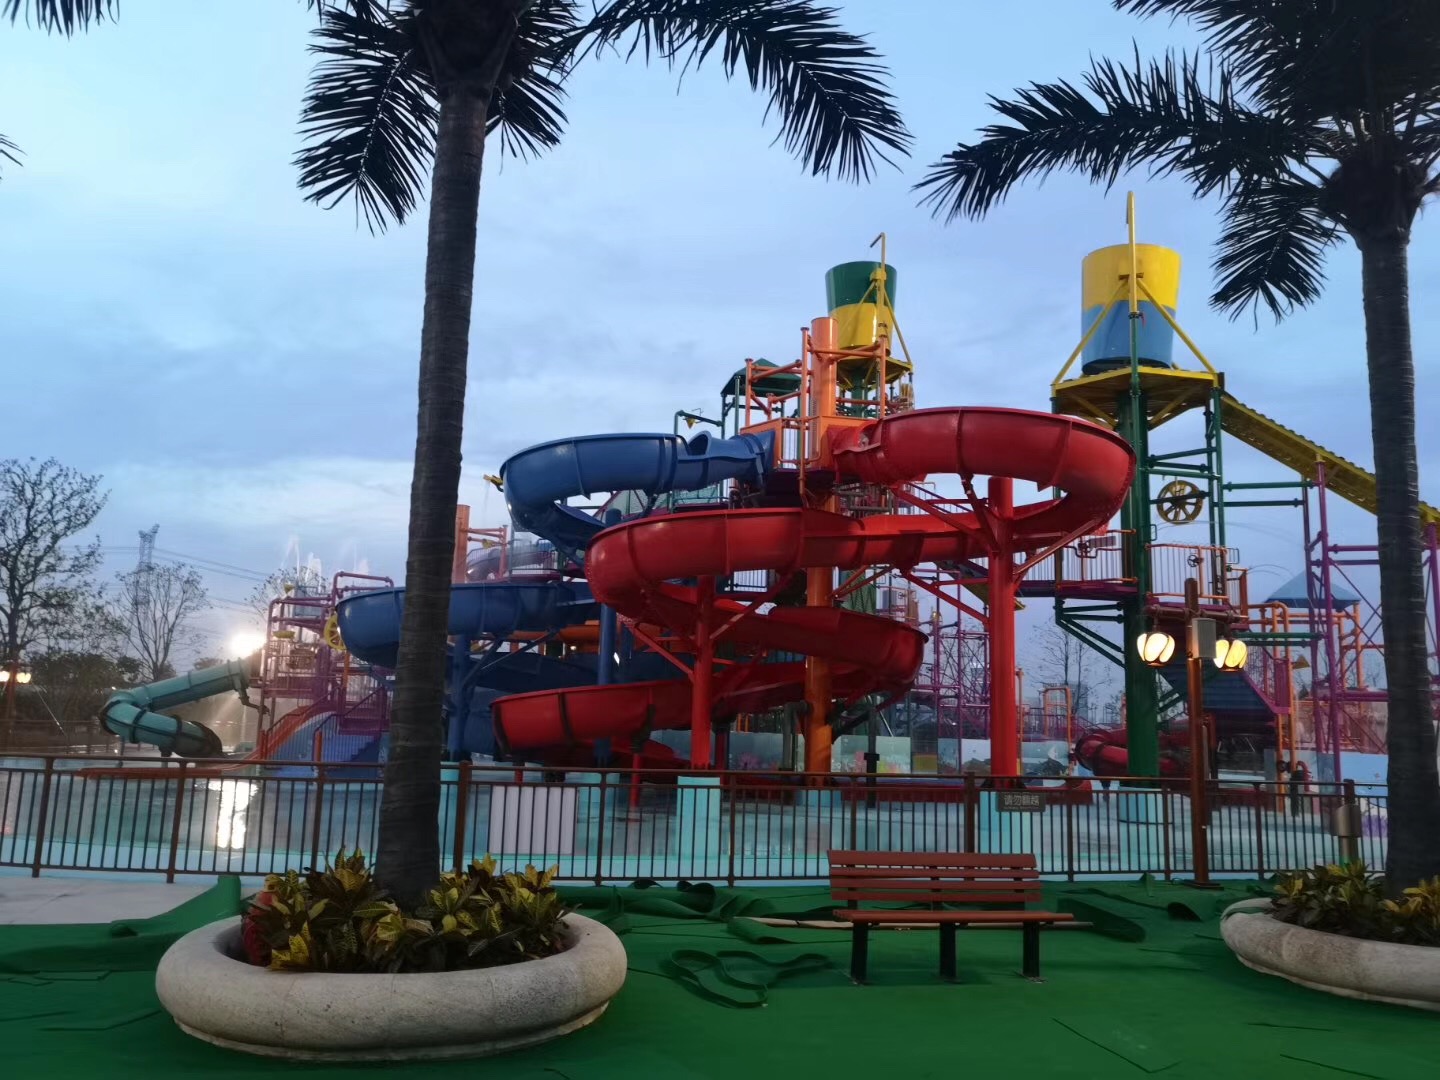 【携程攻略】苏州苏州梦幻乐园景点,一家人一点多和孩子们去玩的，玩的大摆锤空中飞人这两个比较惊喜刺激…